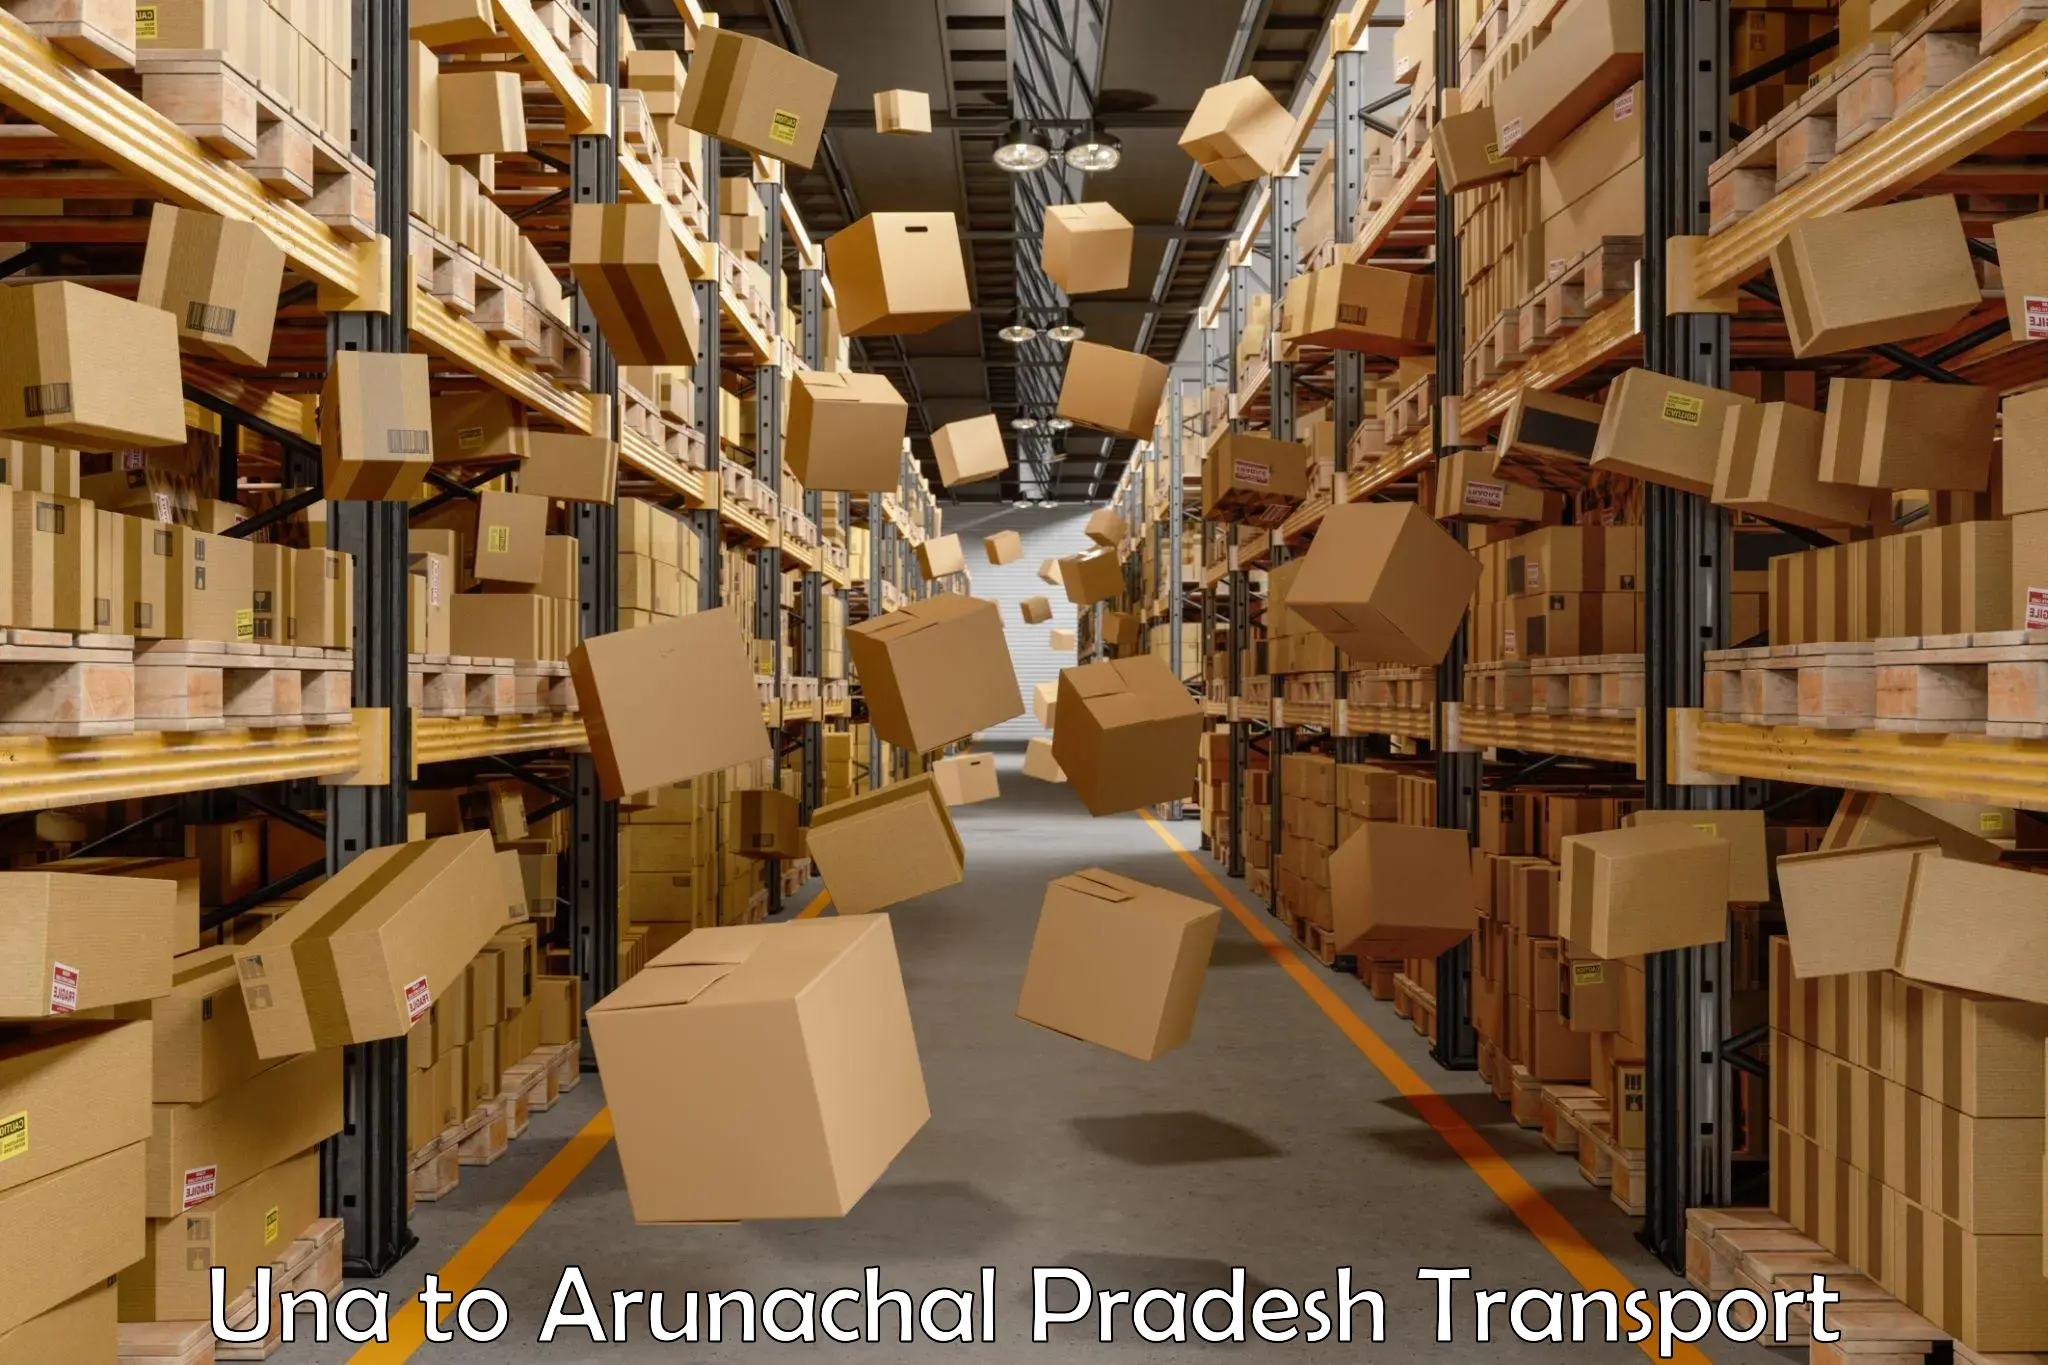 Pick up transport service Una to Arunachal Pradesh